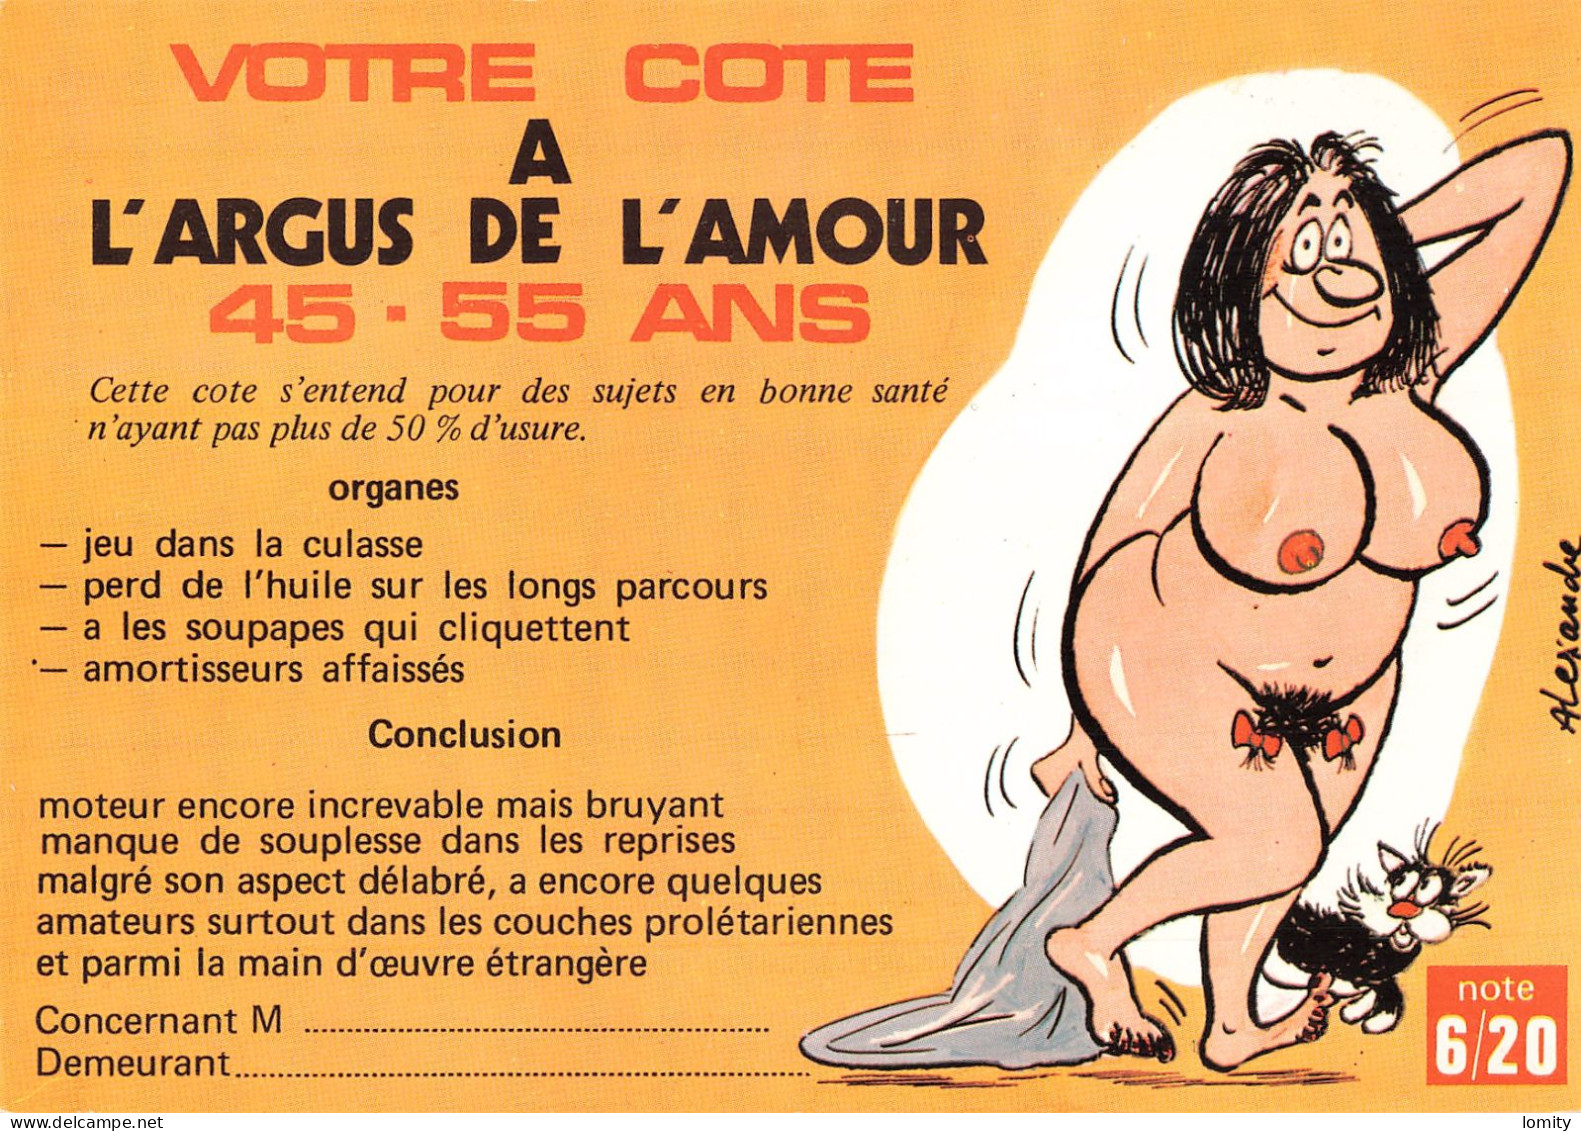 Destockage Lot de 7 cartes - Série 673 Votre cote a L ARGUS DE L AMOUR - Femme nue érotique - illustrateur Alexandre